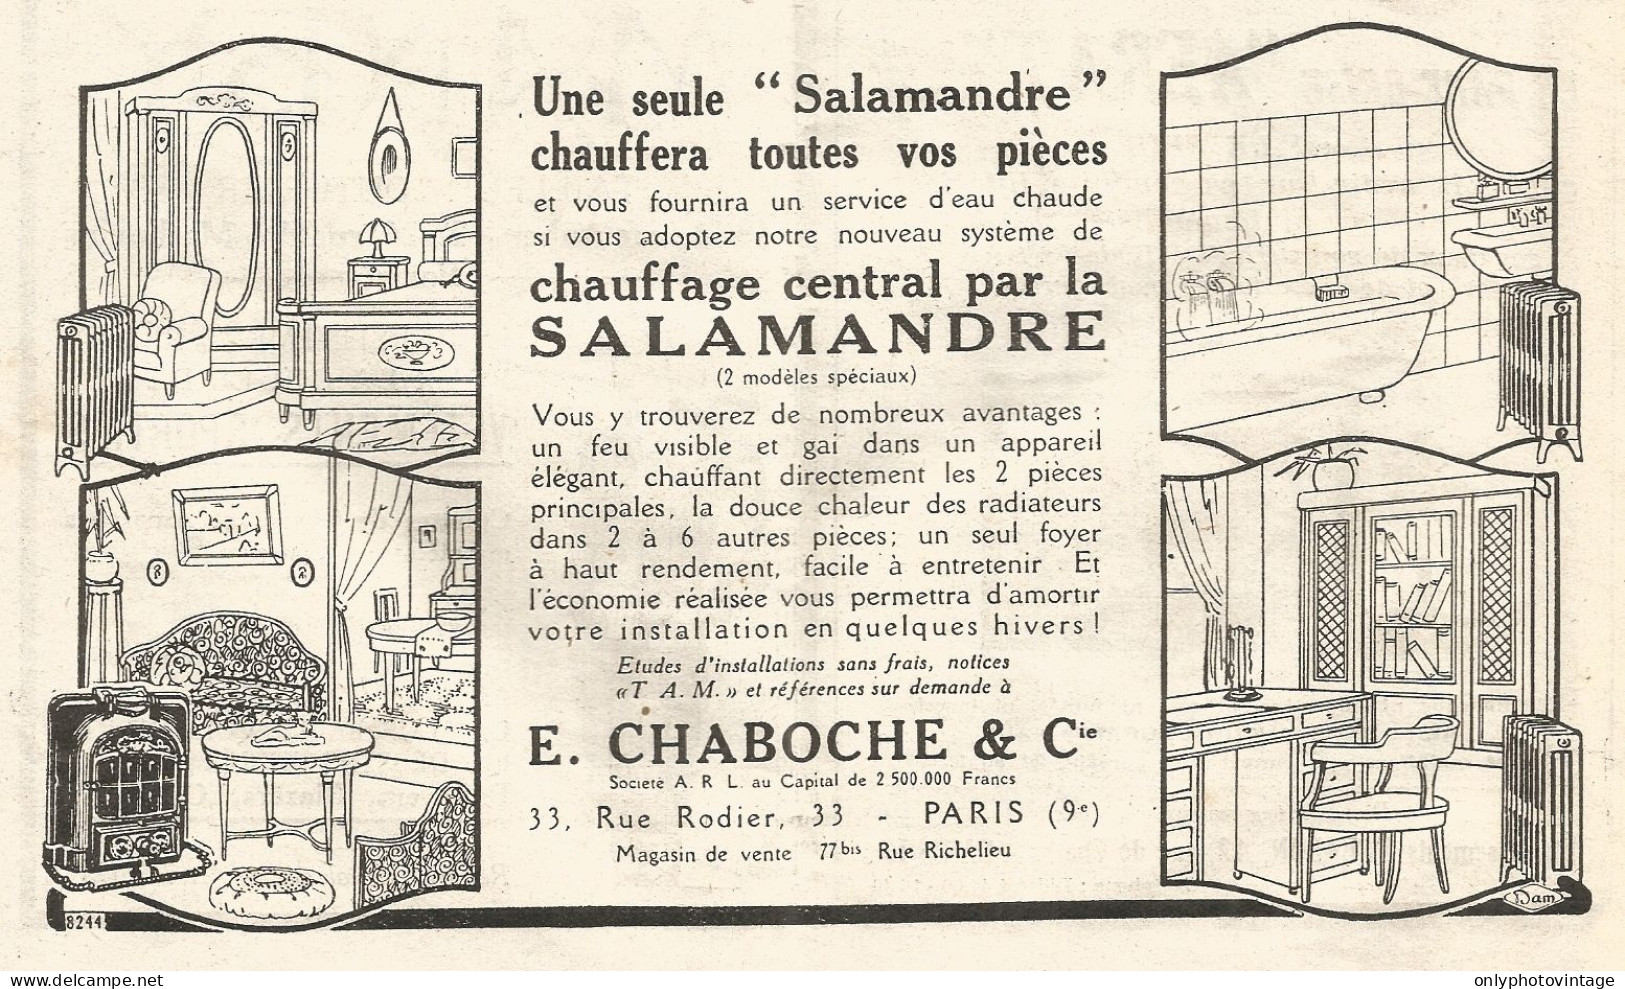 Riscaldamento Centralizzato SALAMANDRE - Pubblicitï¿½ Del 1926 - Old Advert - Advertising